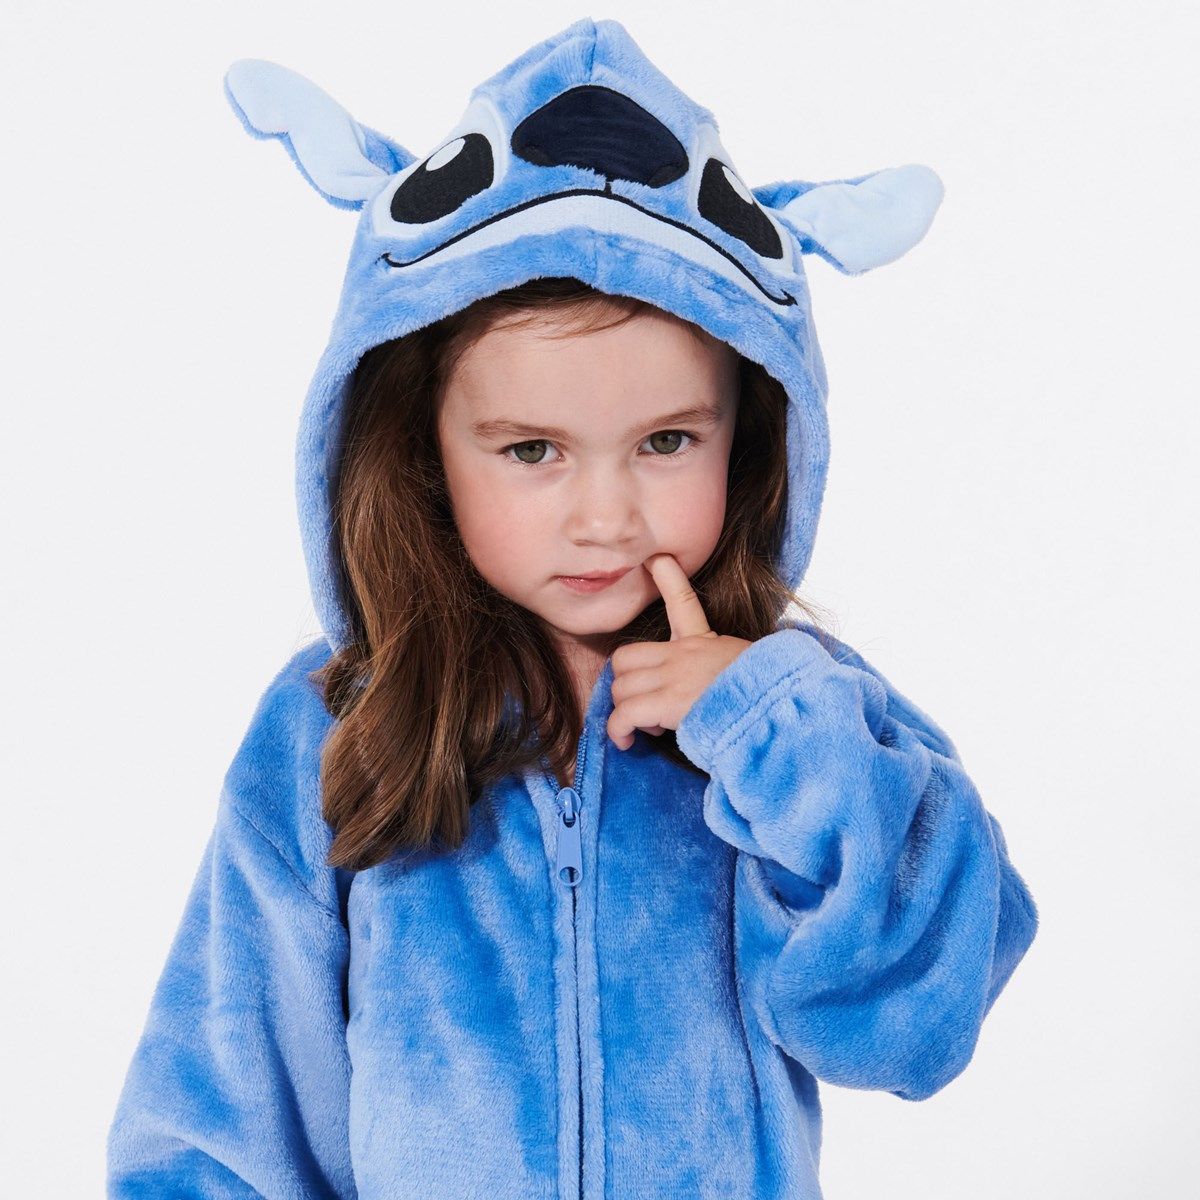 Disney Lilo & Stitch unisexe pyjama à capuchon convertible en